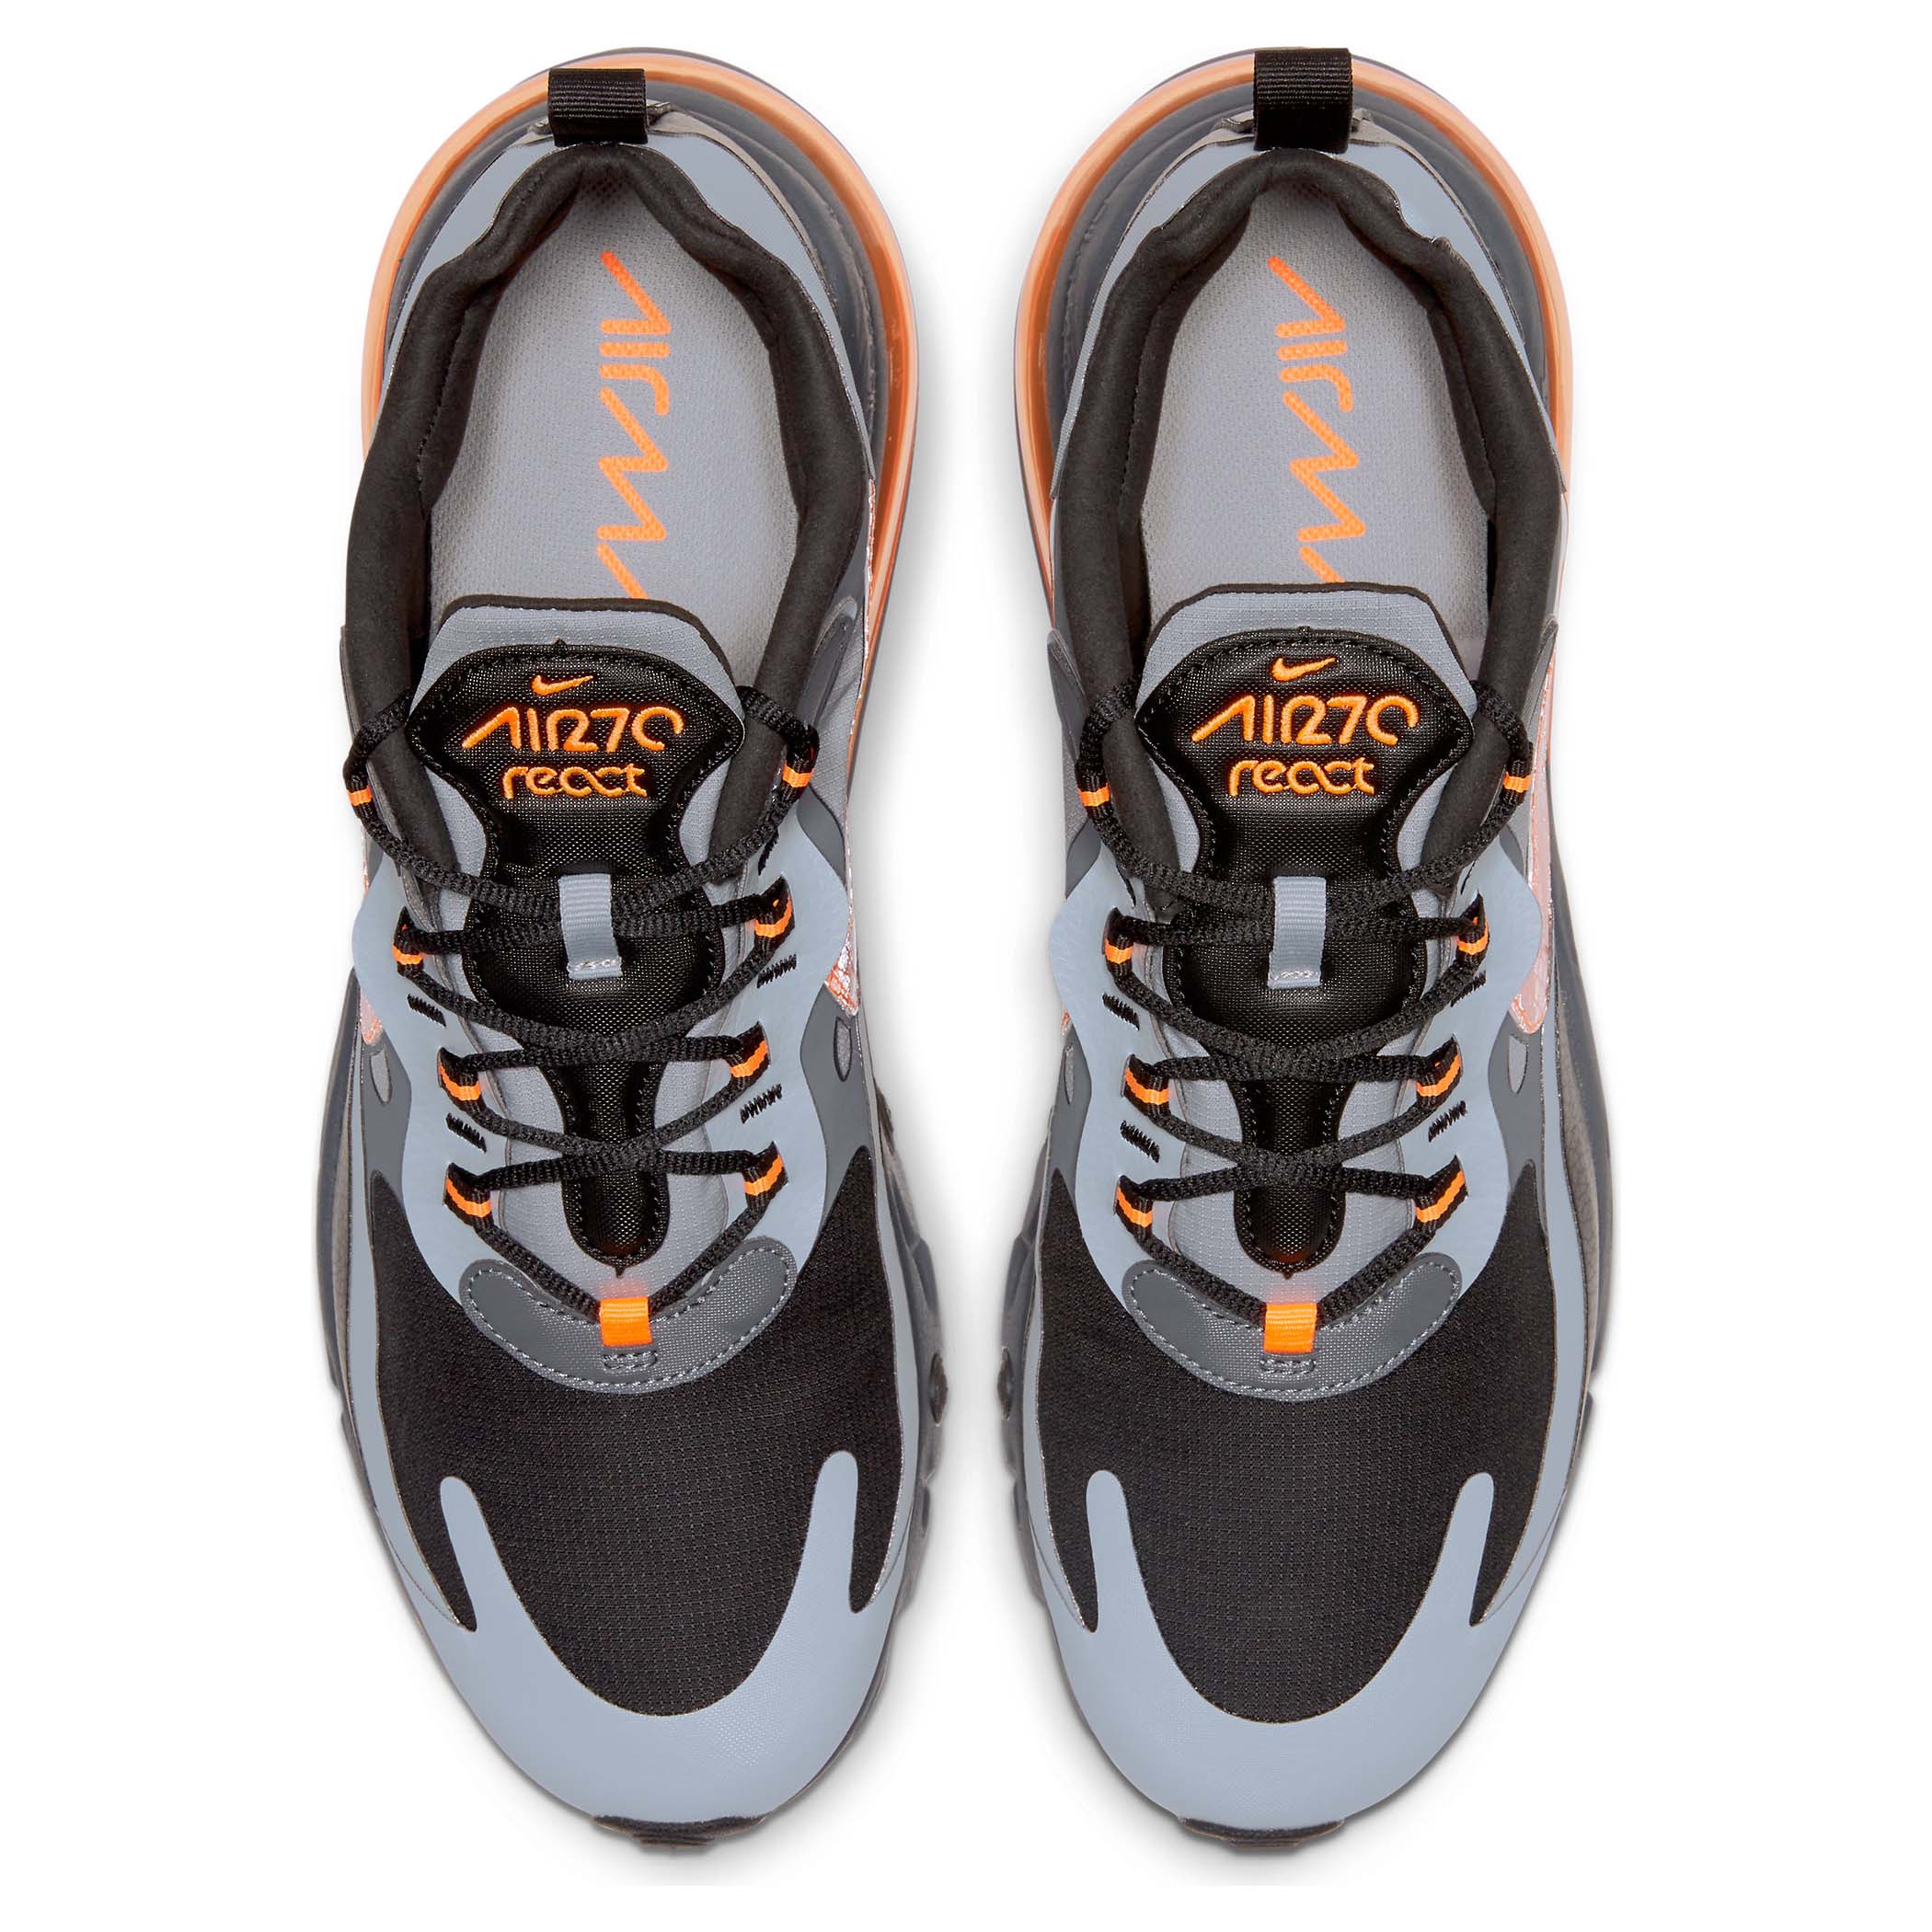 air max 270 grey and orange